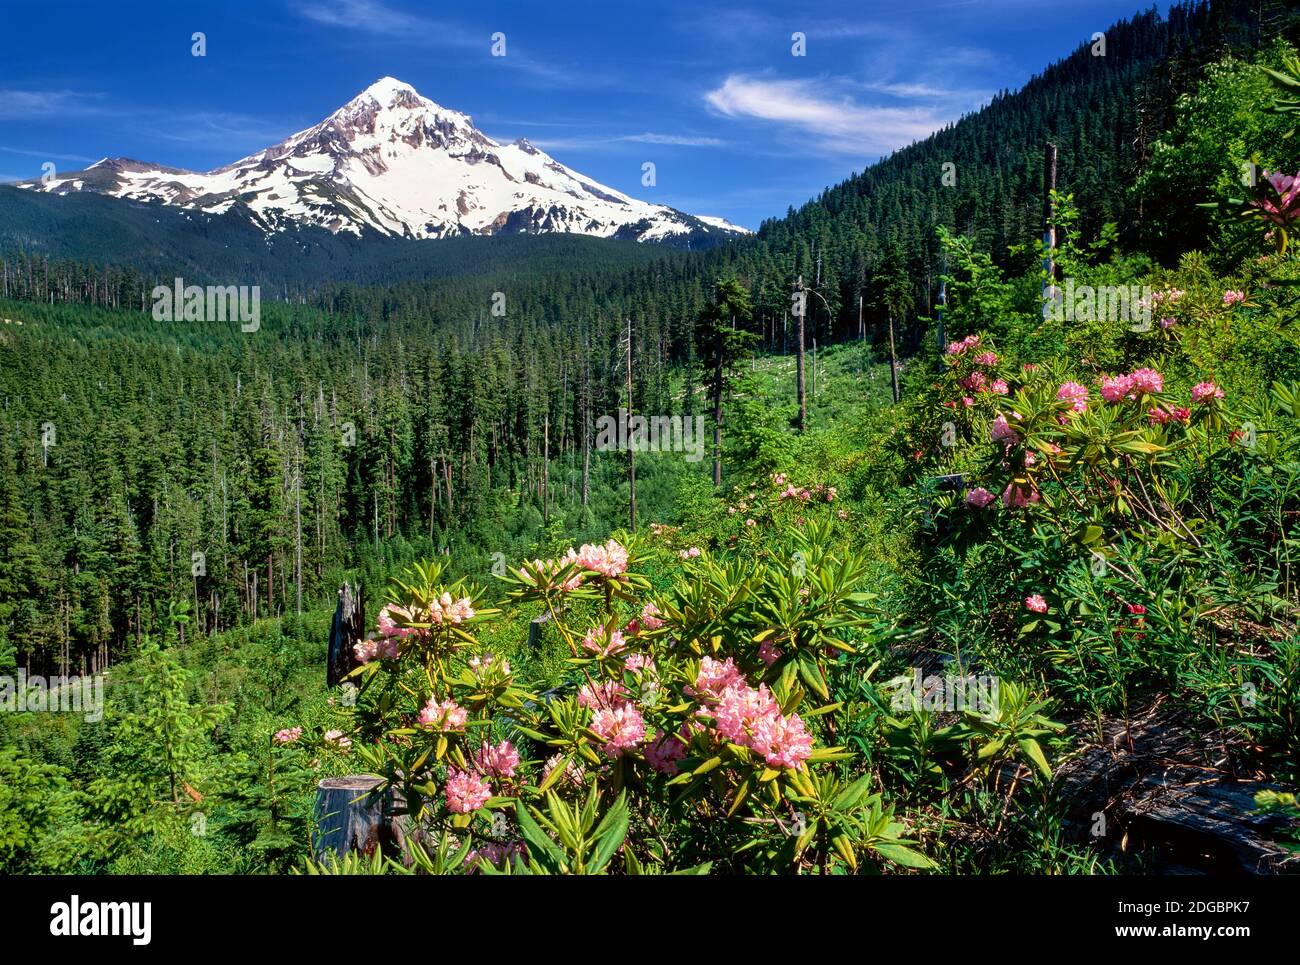 Les fleurs de Rhodendron fleurissent sur la plante avec la chaîne de montagne en arrière-plan, Mt Hood, Lolo Pass, Mt Hood National Forest, Oregon, États-Unis Banque D'Images